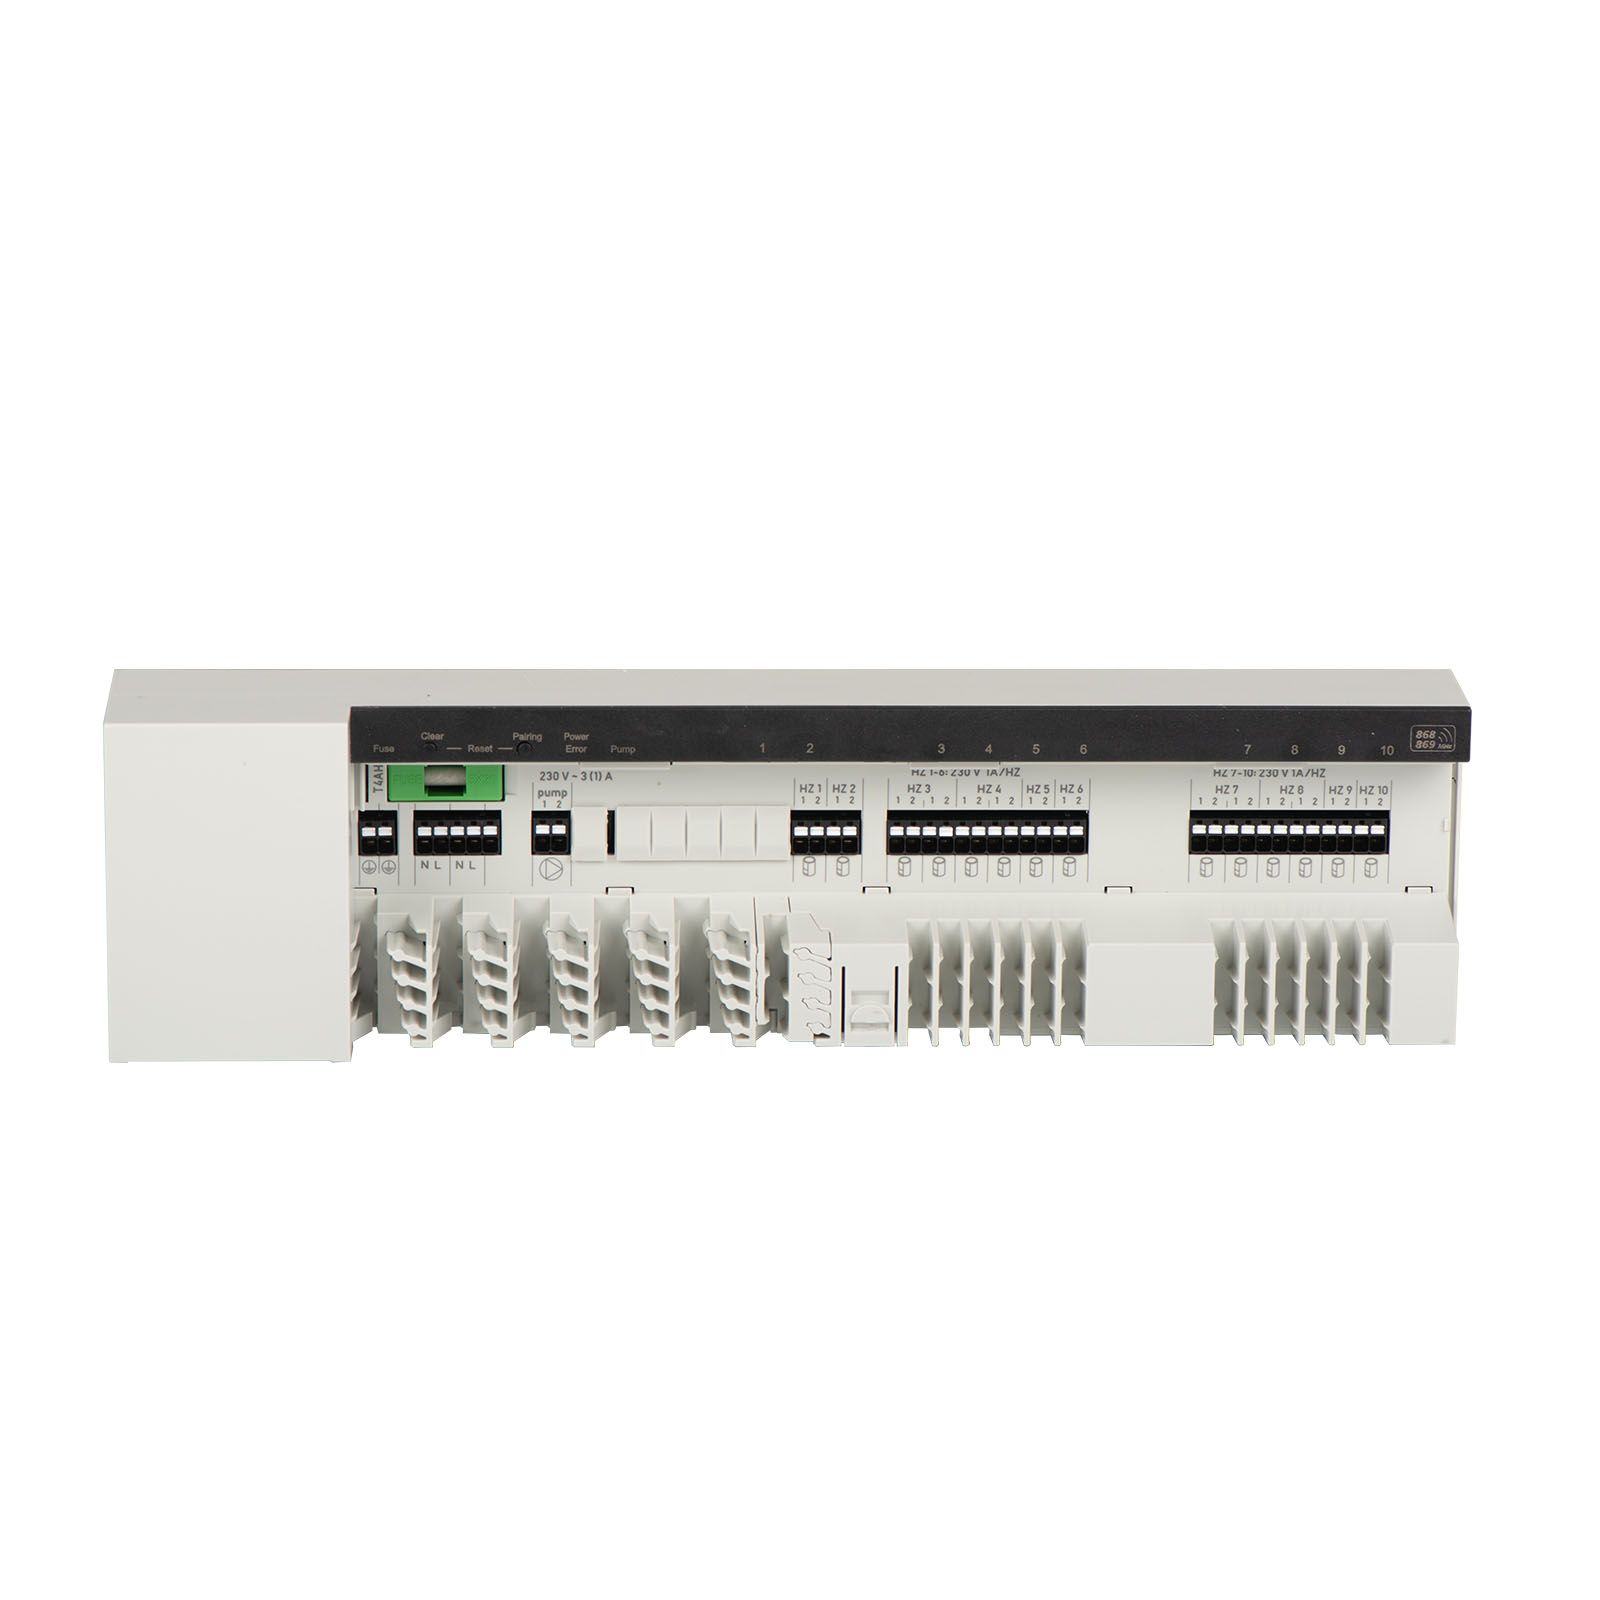 Alpha Smartware Basisstation Standard BSS 21001-10N2, 10 Zonen, 230V, neutral